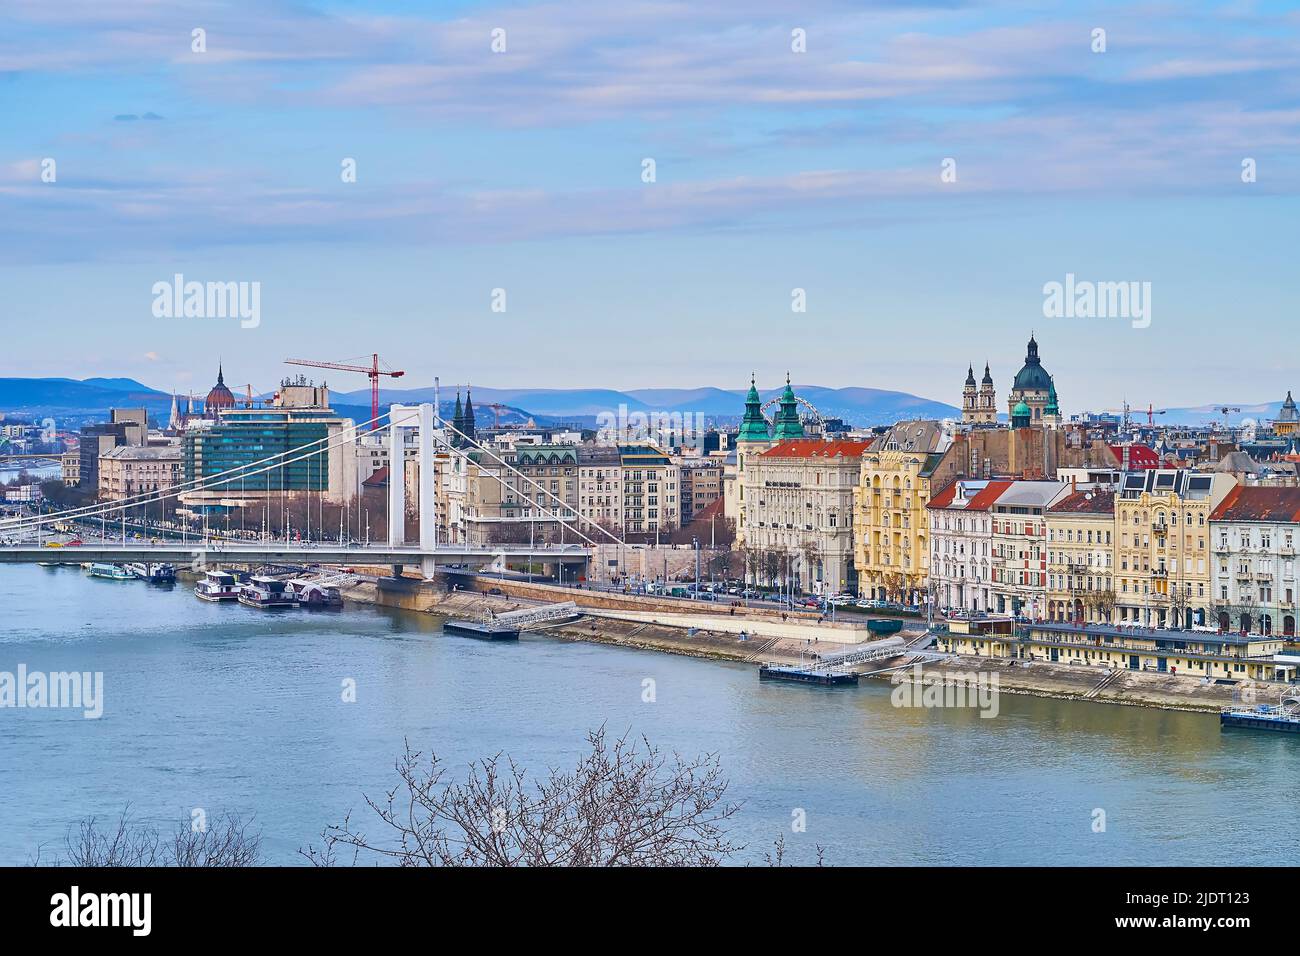 La colina Gellert observa la arquitectura histórica de Pest, el río Danubio y el blanco puente Elisabeth, Budapest, Hungría Foto de stock